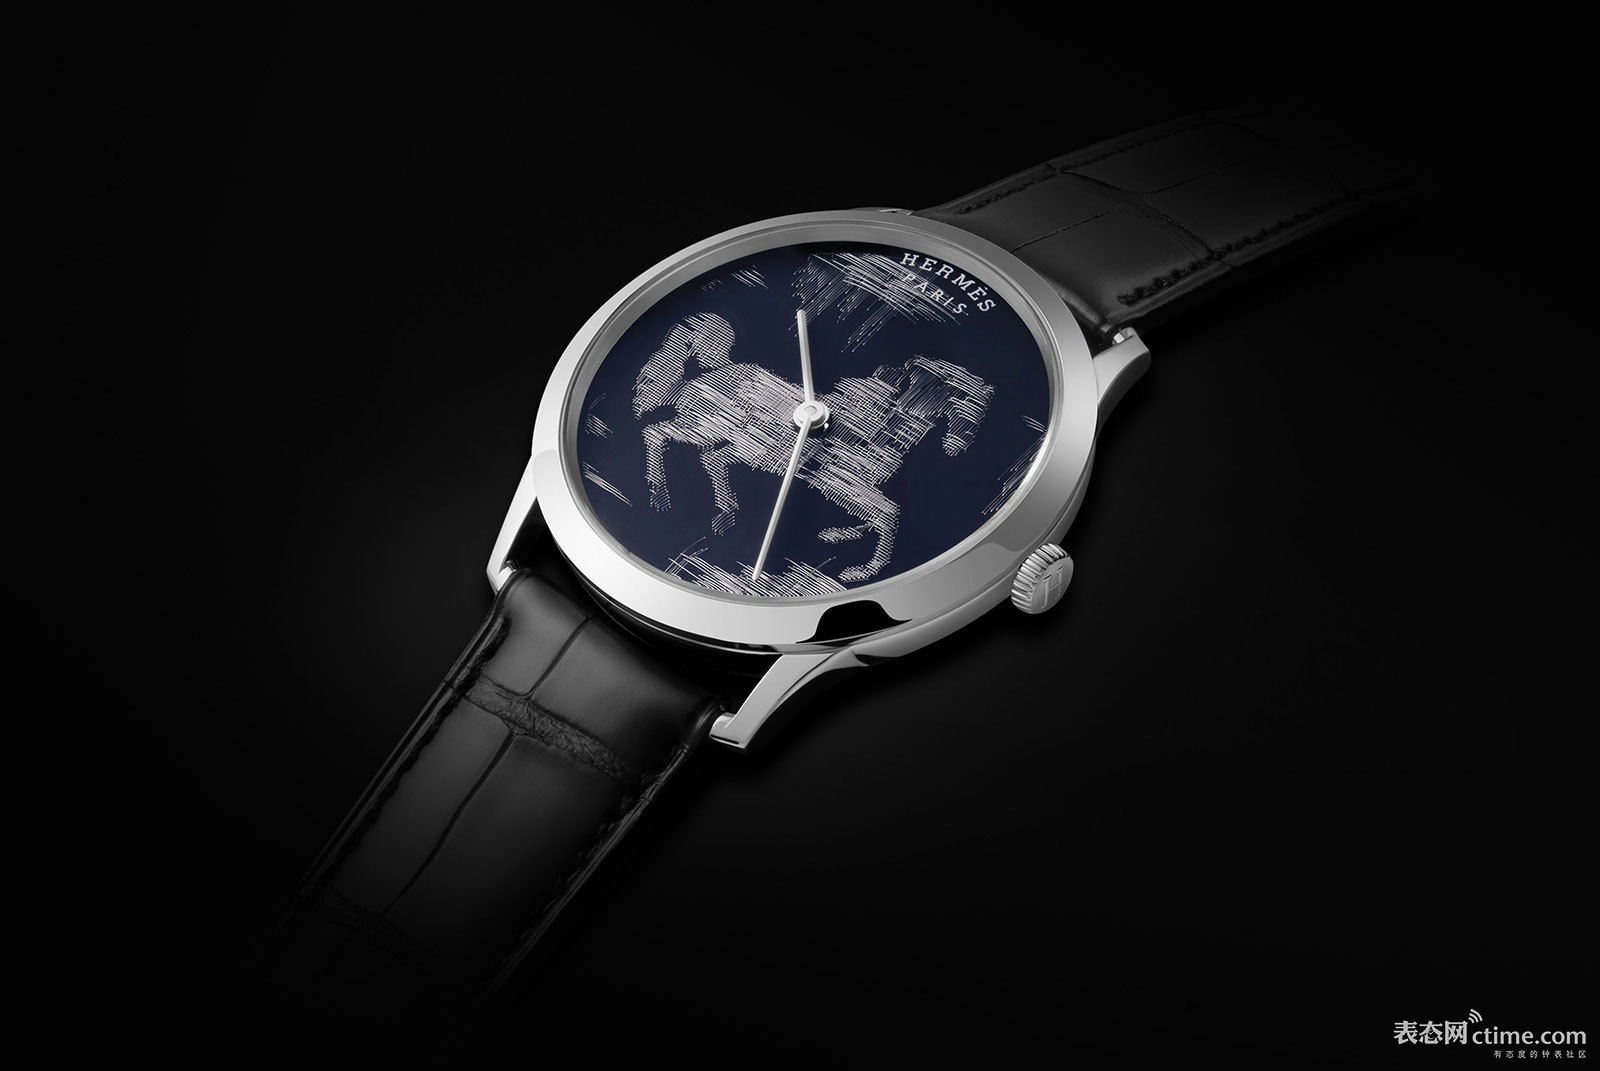 Hermes-Slim-Cheval-Ikat-watch-1.jpg